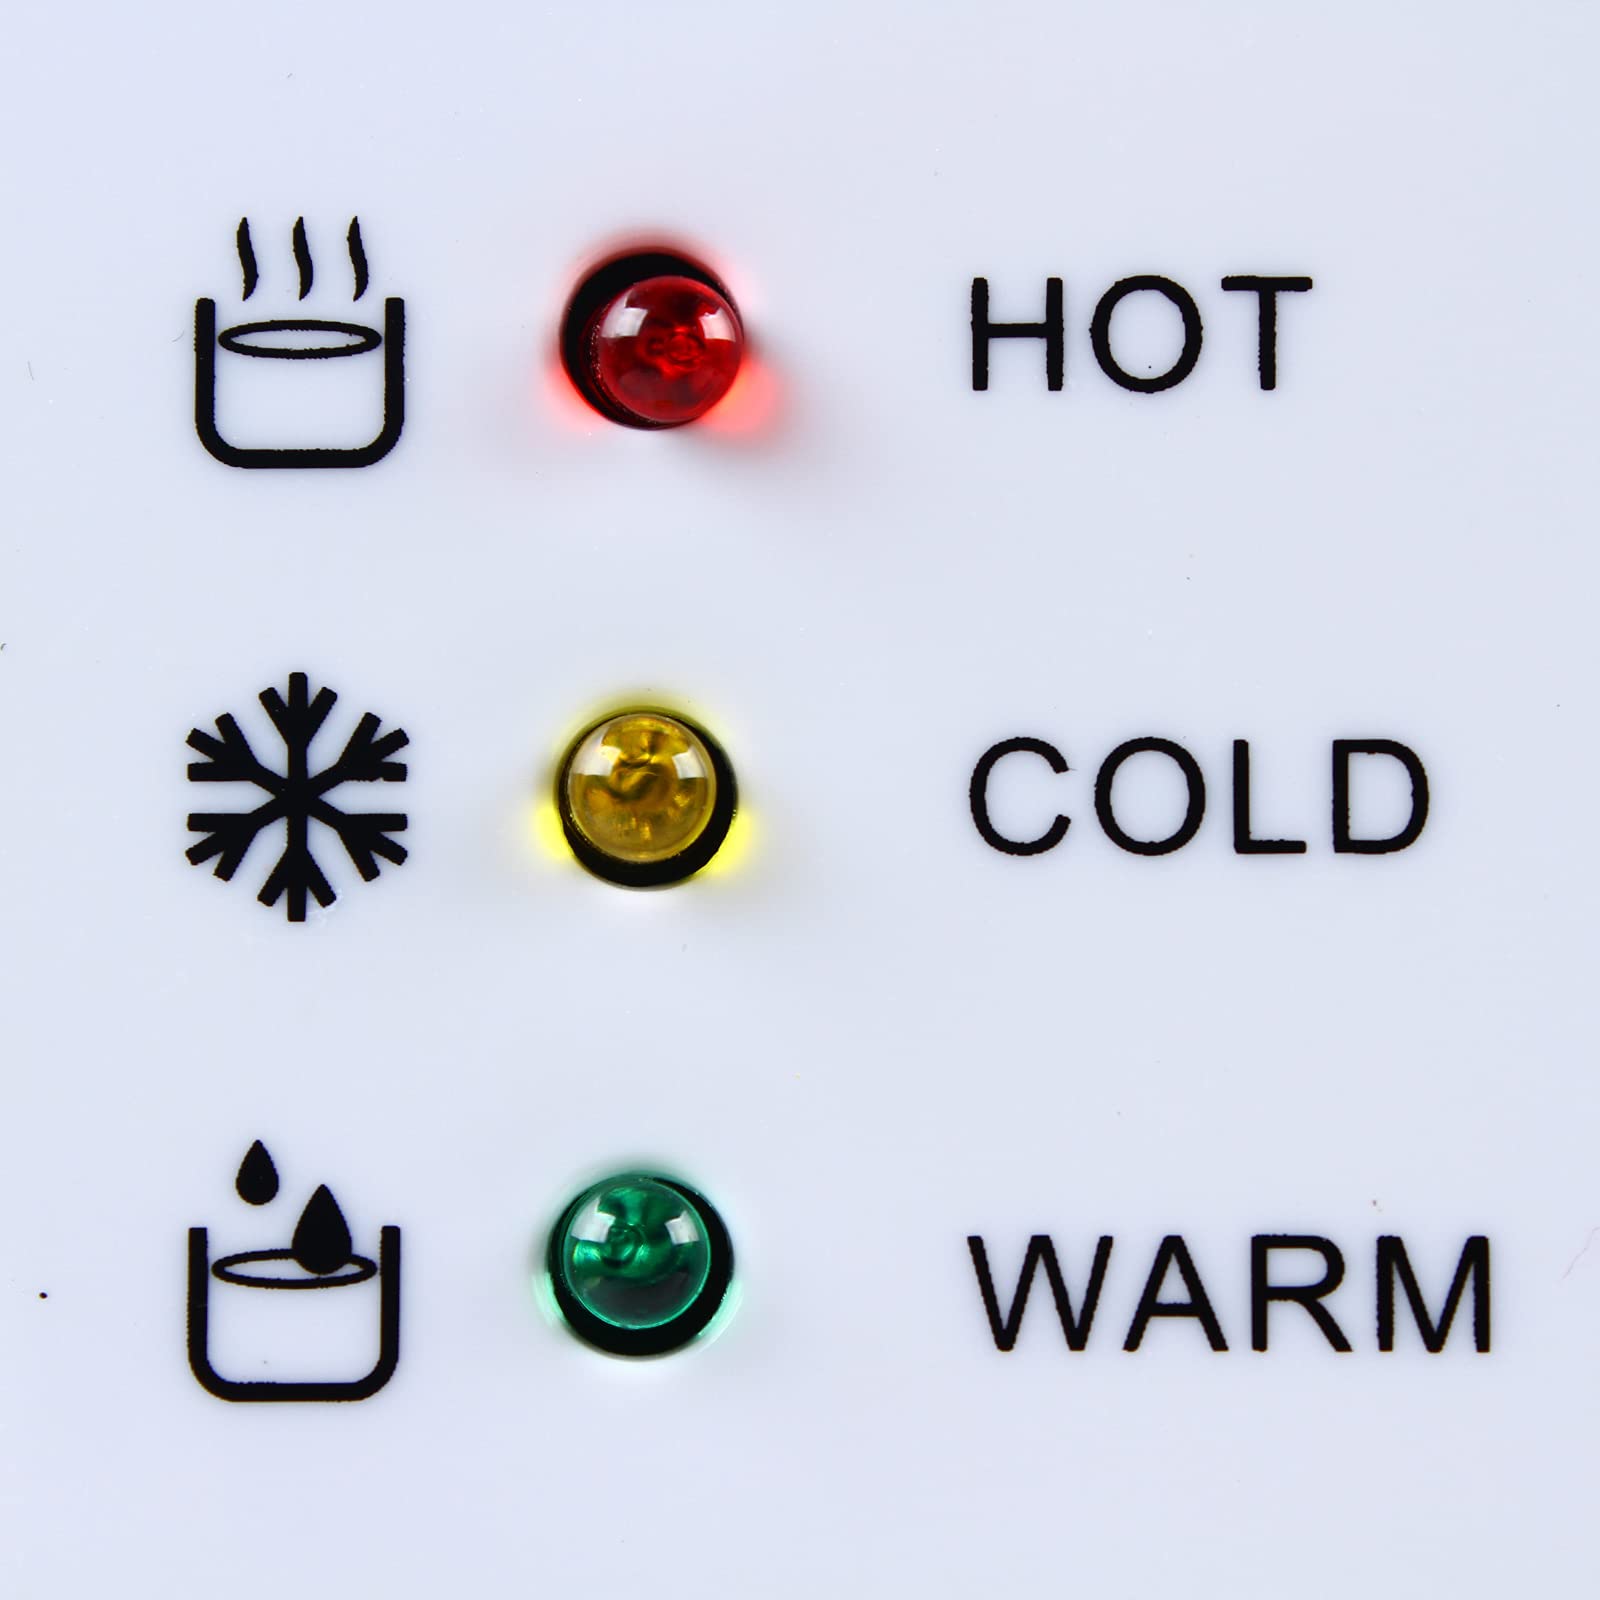 Elektrischer Spender für Warm- und Kaltwasserkühler für das Büro zu Hause, 220 V, zwei Farben, schnelle Kühlung (weiß)